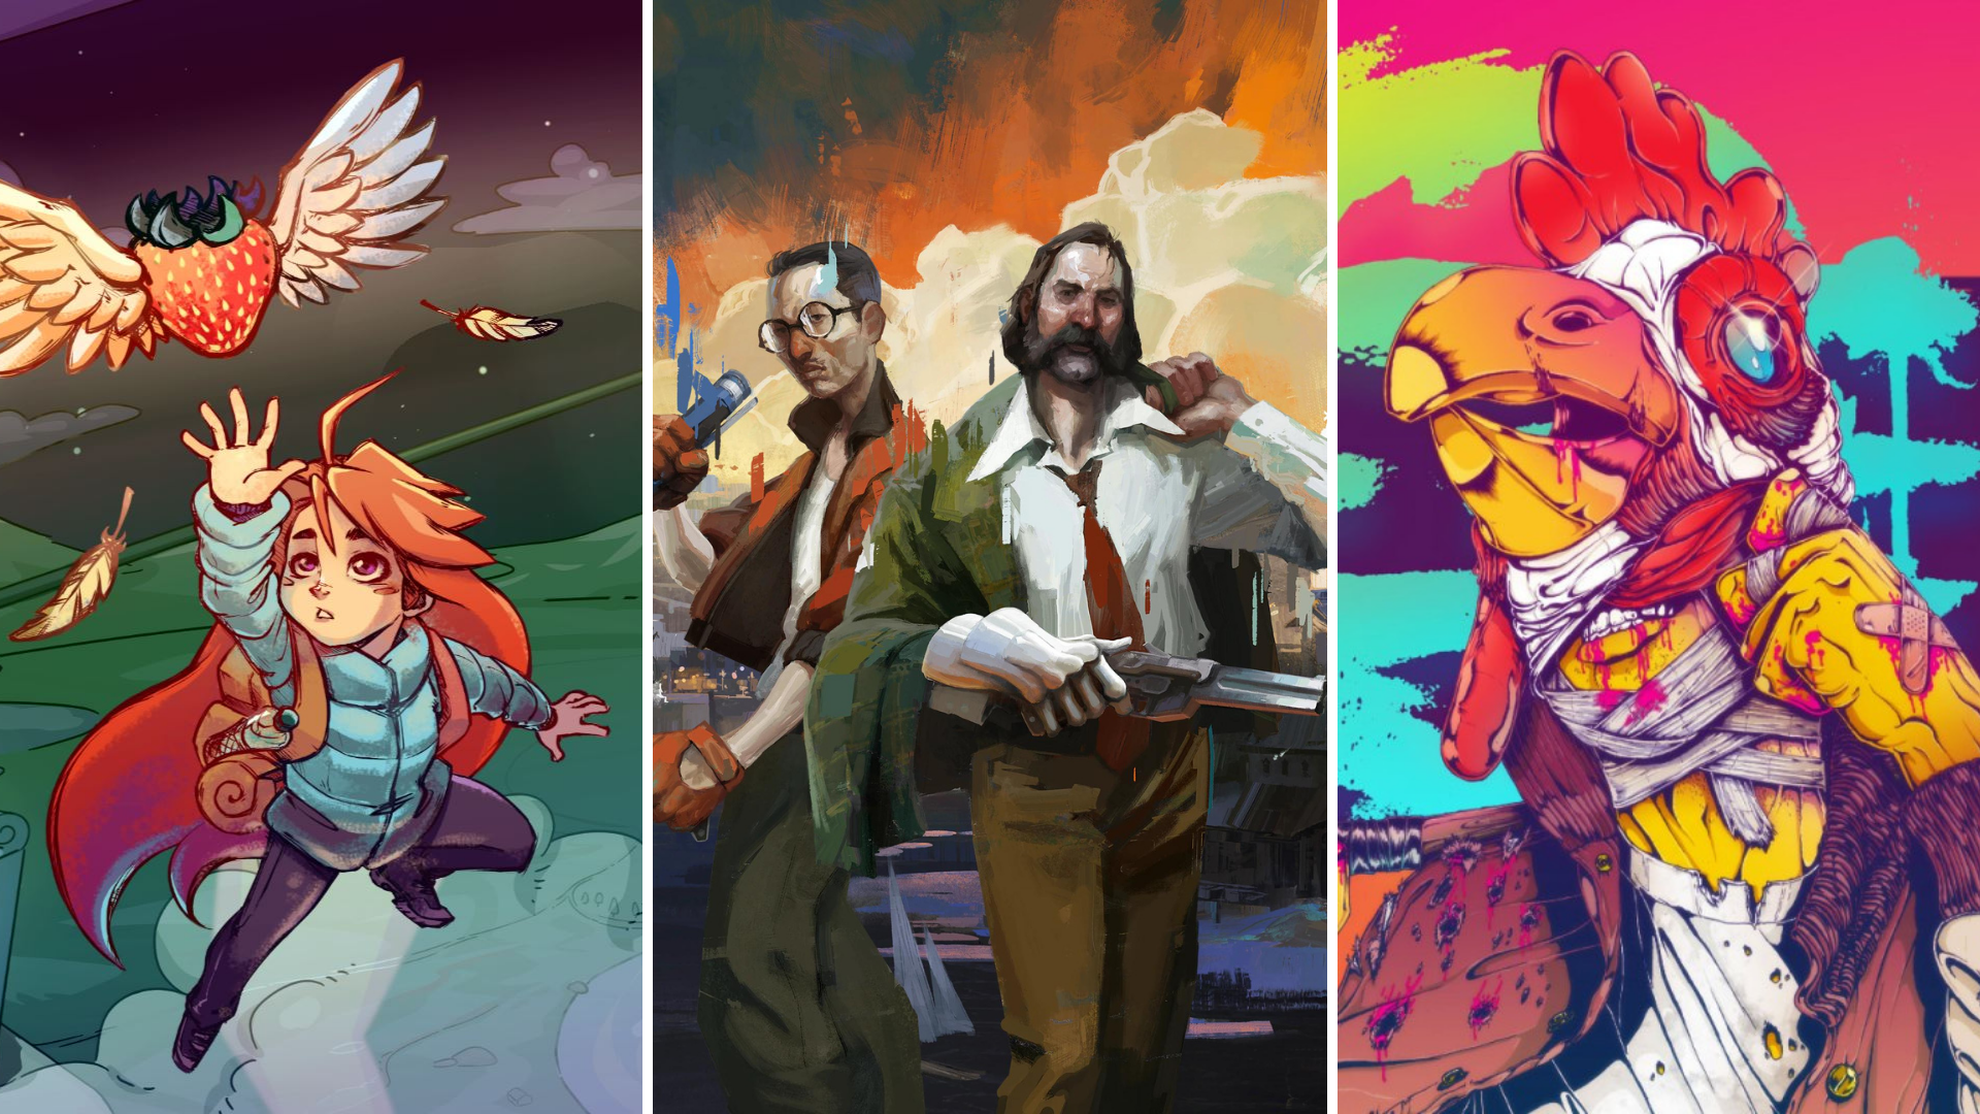 Os 5 melhores jogos indie no Steam (novembro de 2023) 